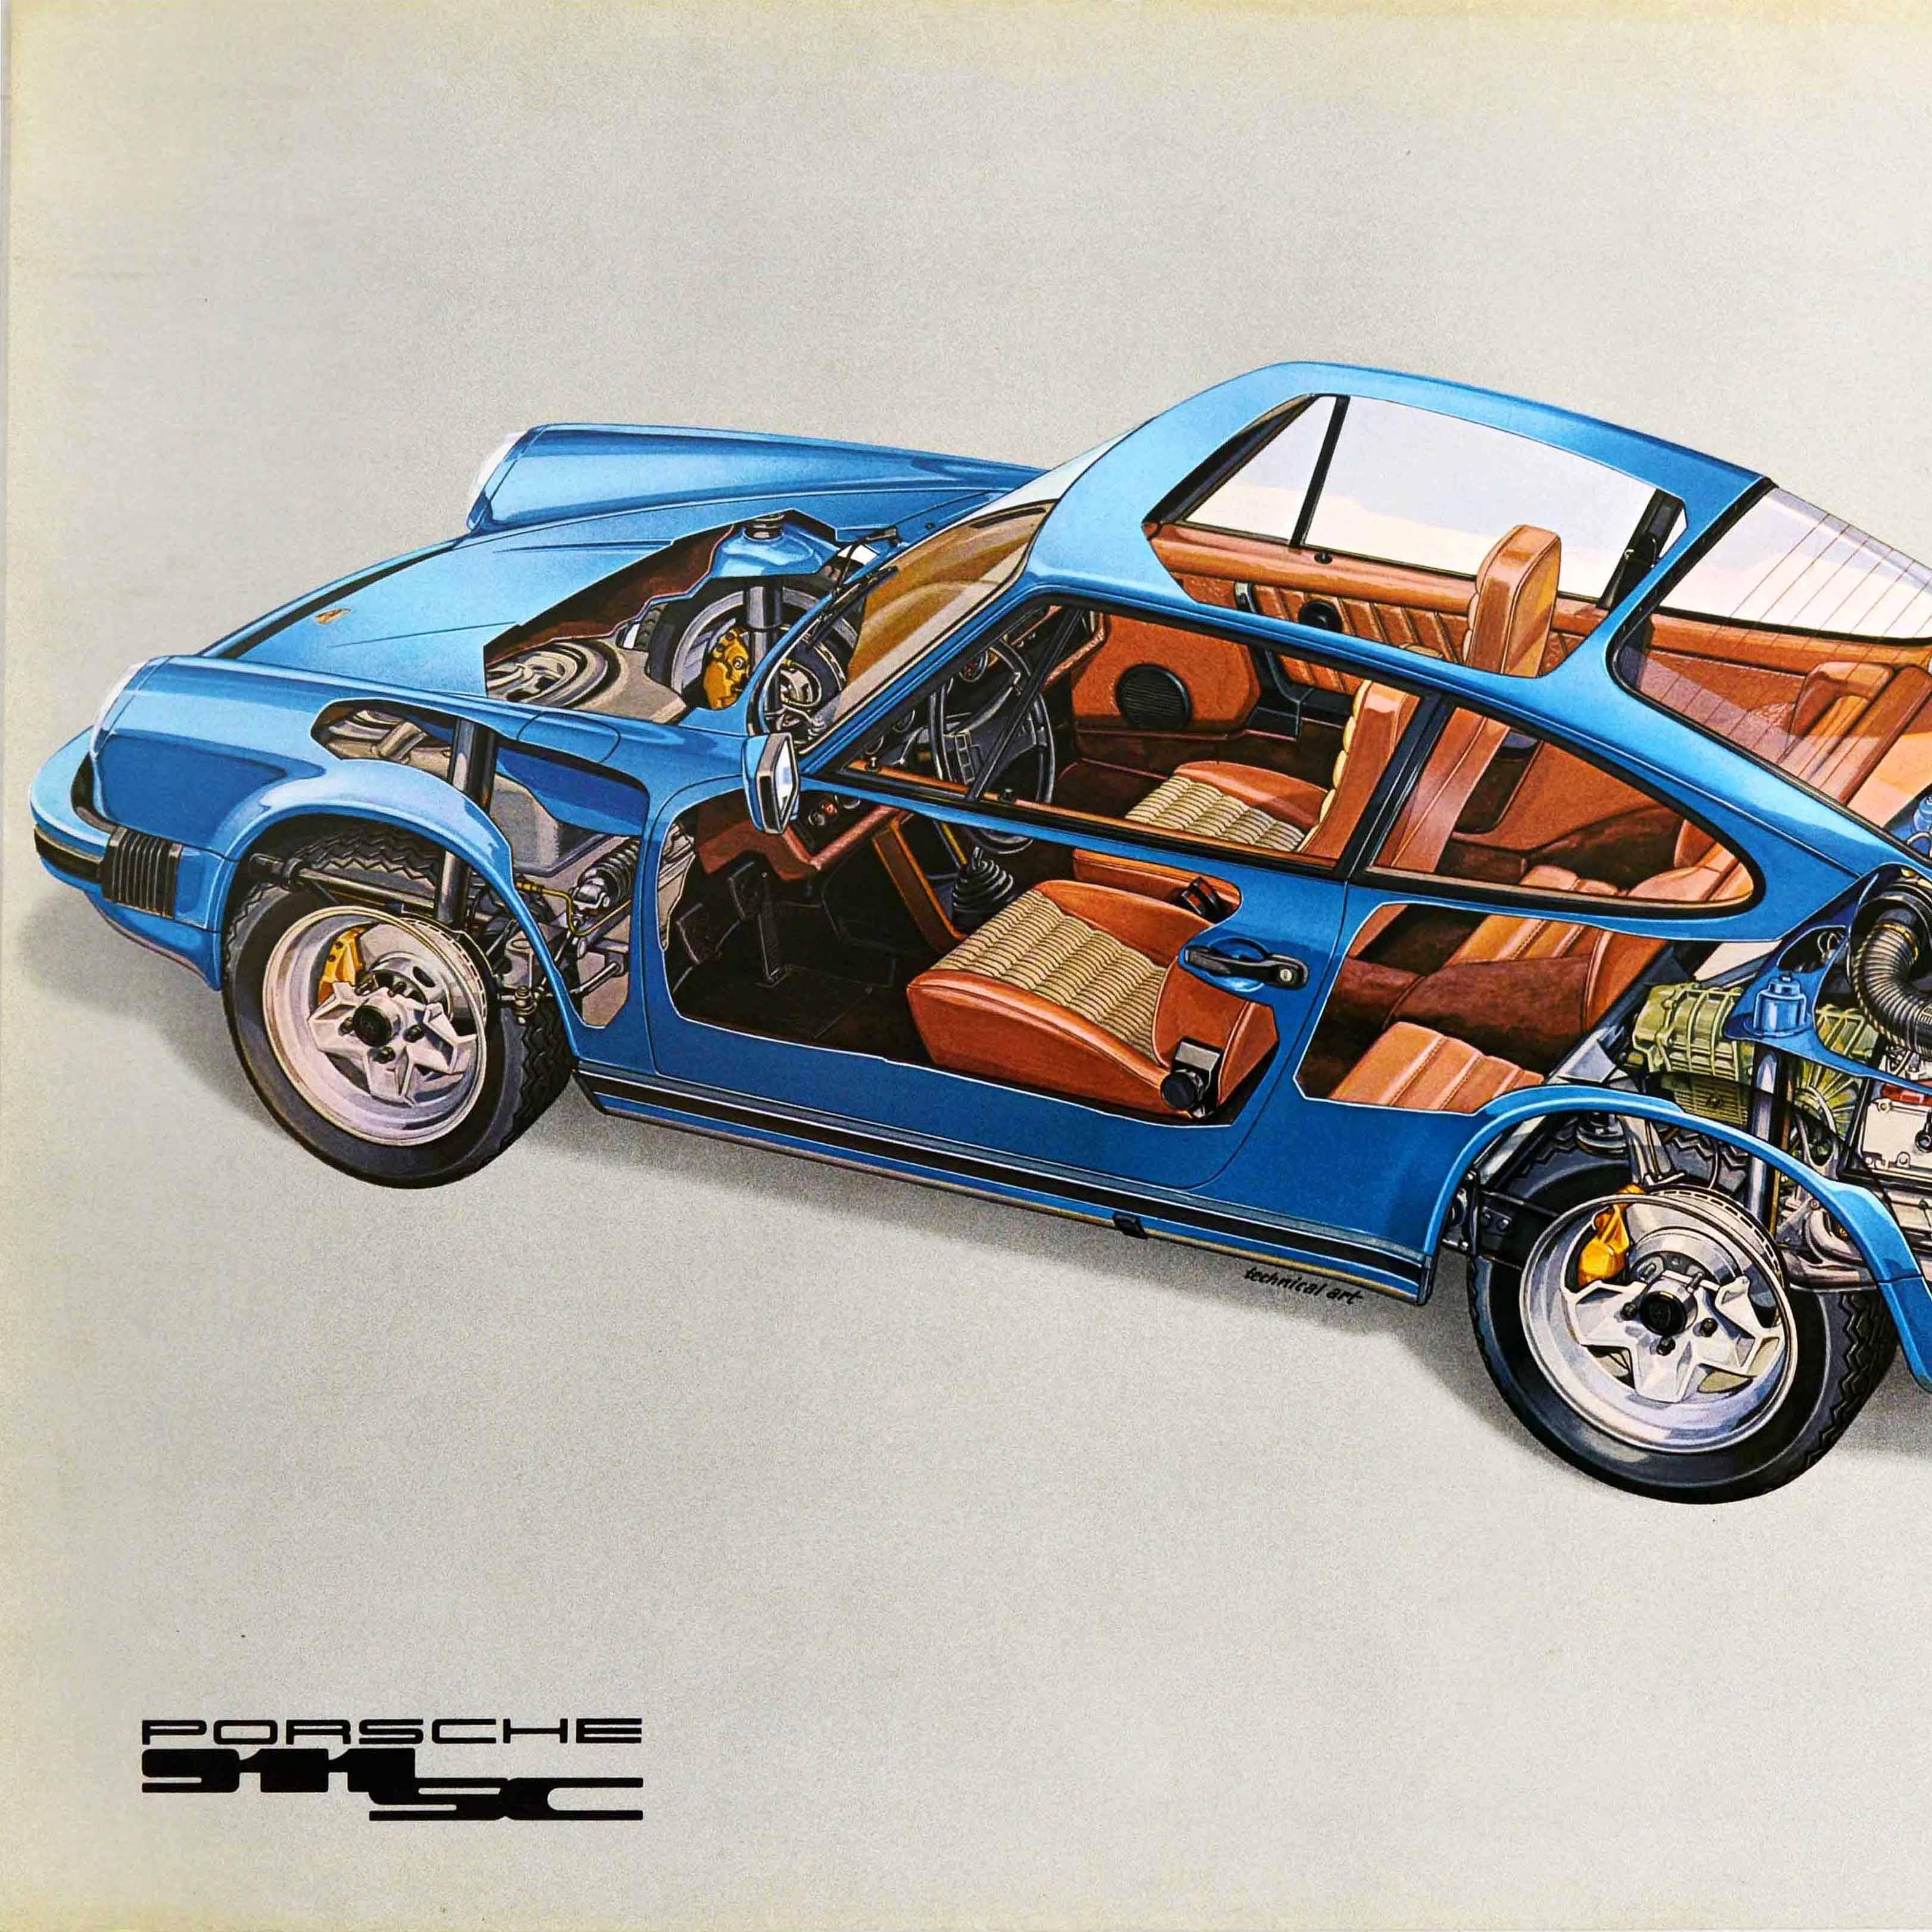 Affiche publicitaire originale d'un concessionnaire automobile - Porsche 911 SC - comportant une découpe montrant l'extérieur et l'intérieur de la voiture de sport vue de côté et à travers le toit, y compris le moteur et les roues, les sièges et le